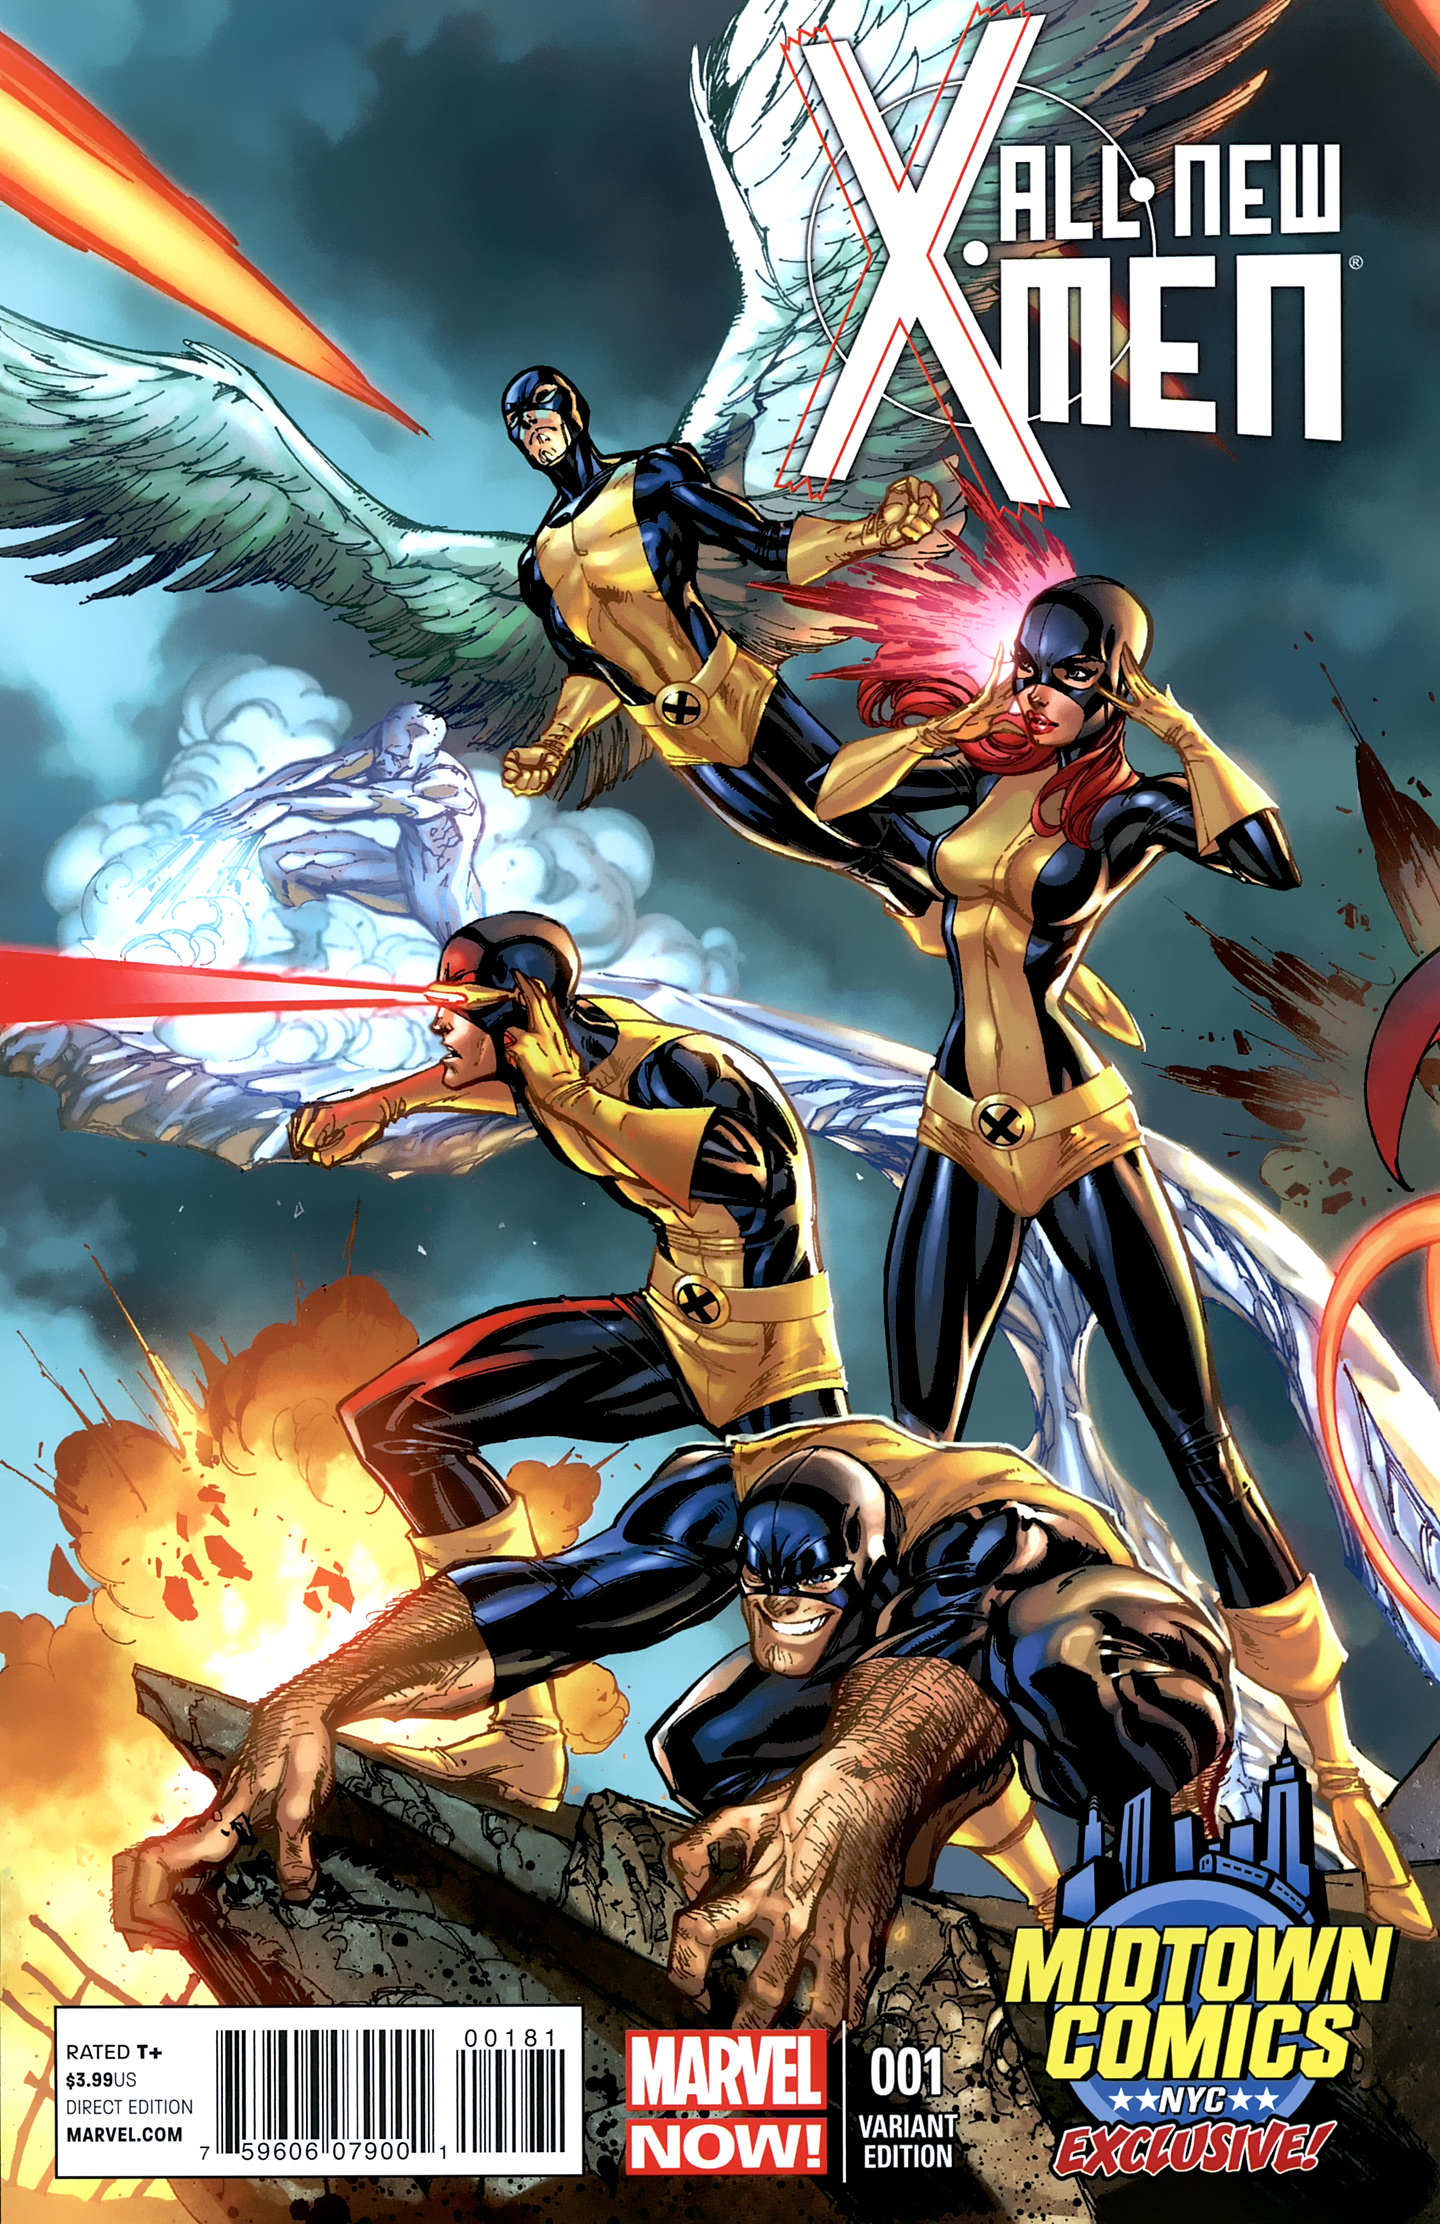 All New X-Men Pics, Comics Collection